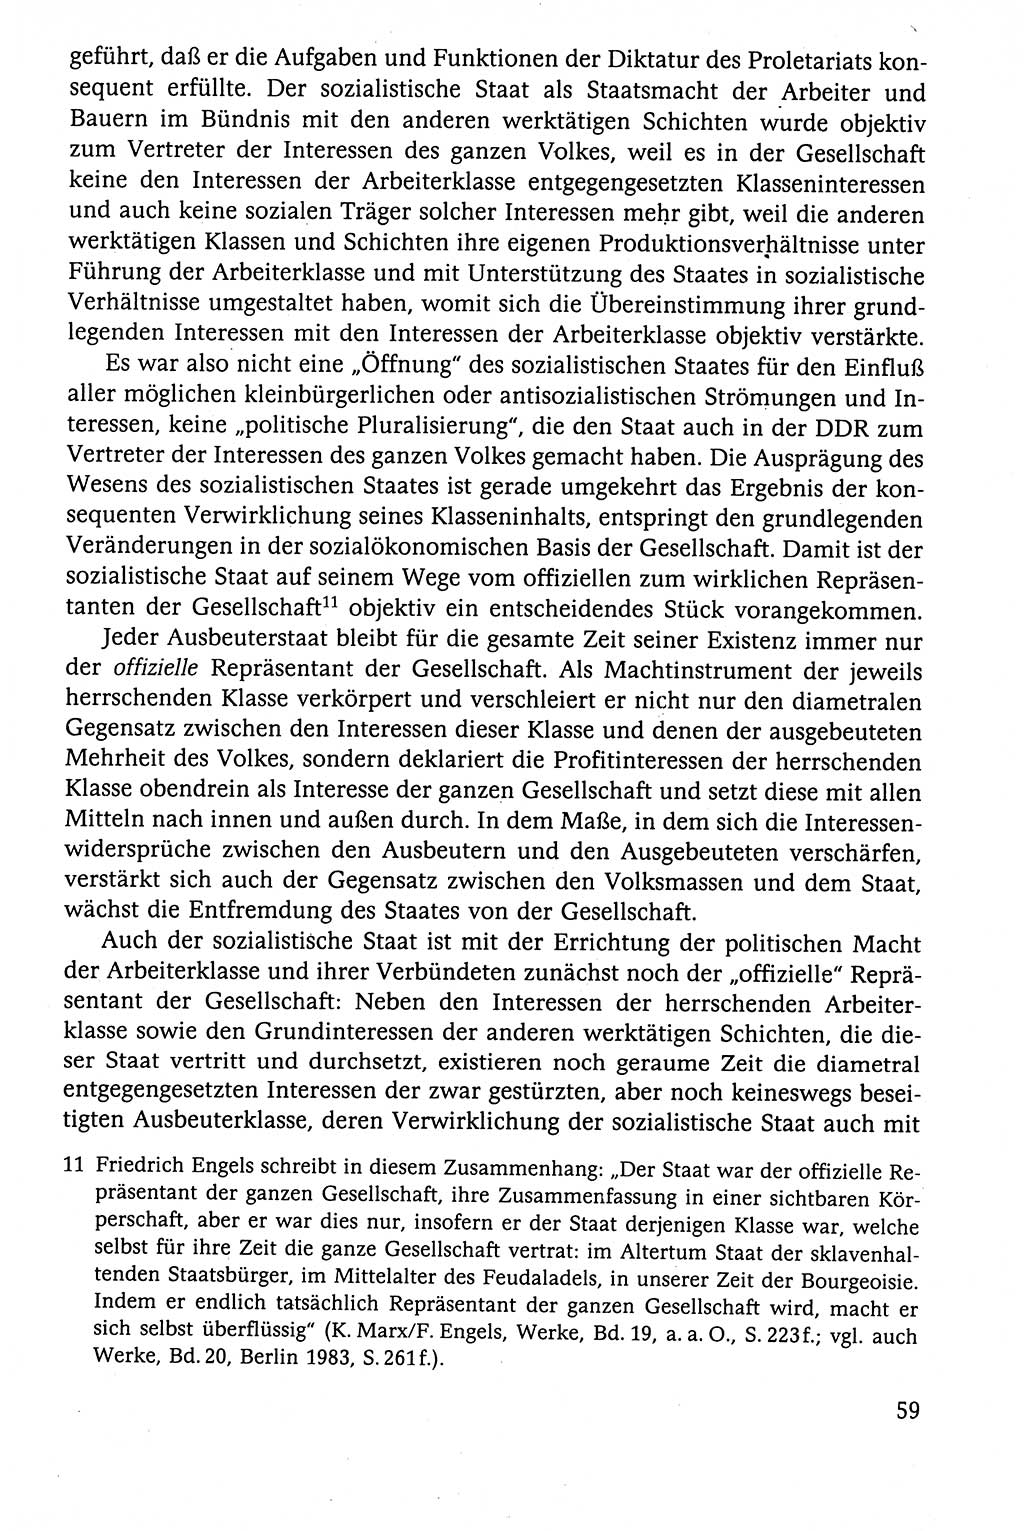 Der Staat im politischen System der DDR (Deutsche Demokratische Republik) 1986, Seite 59 (St. pol. Sys. DDR 1986, S. 59)